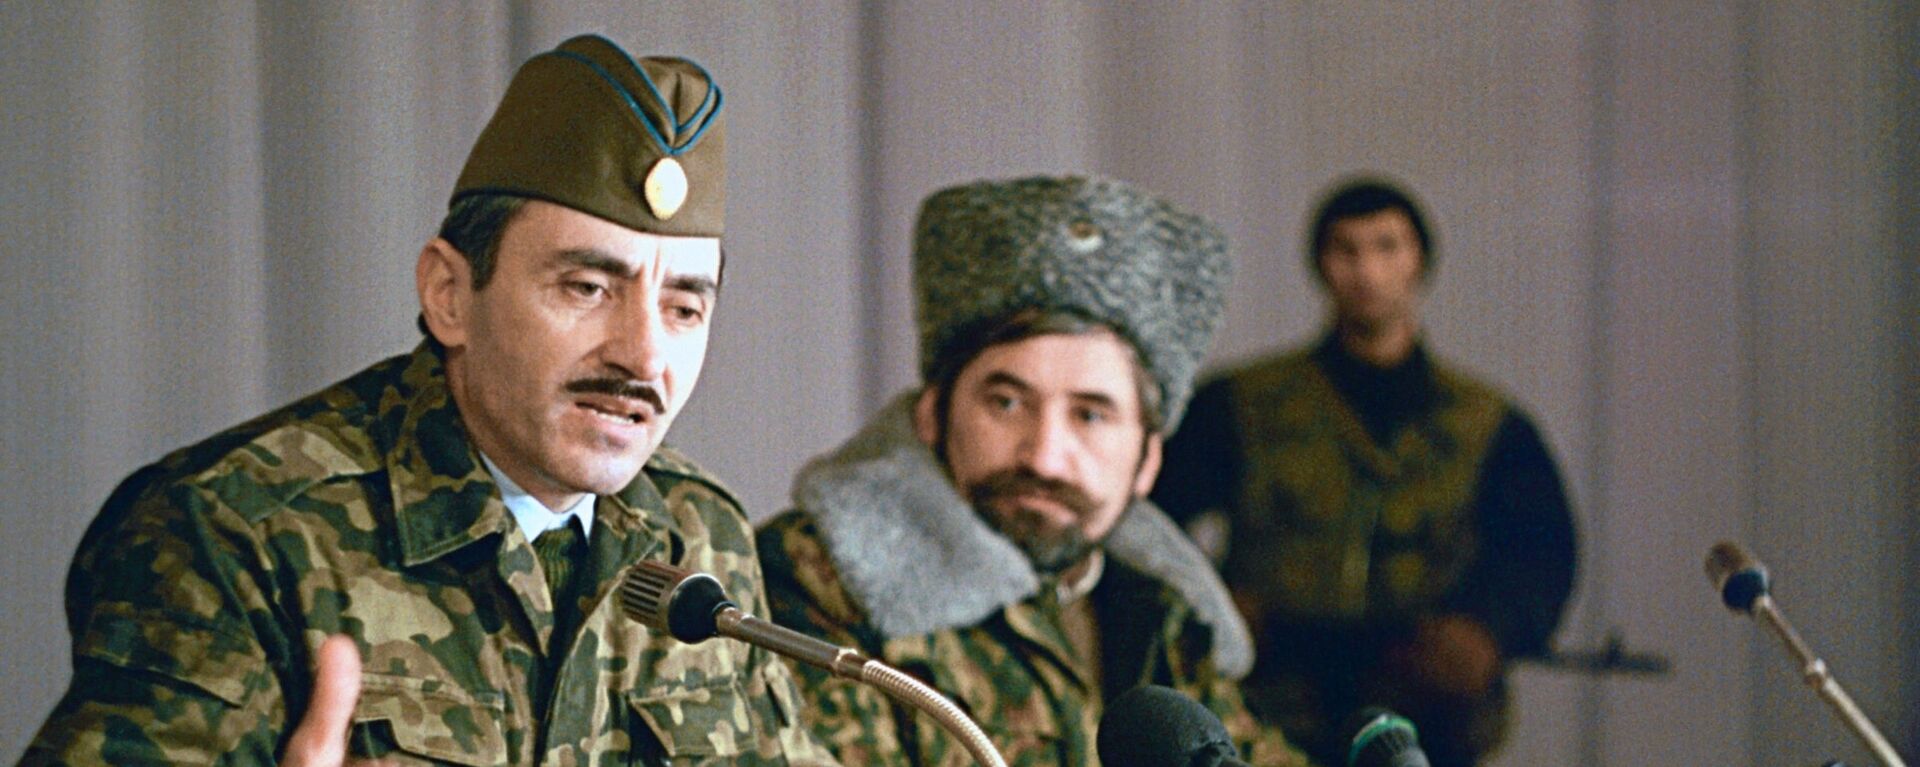 Первый президент Чеченской Республики Джохар Дудаев (1944-1996) - первый слева. - Sputnik Latvija, 1920, 02.12.2019